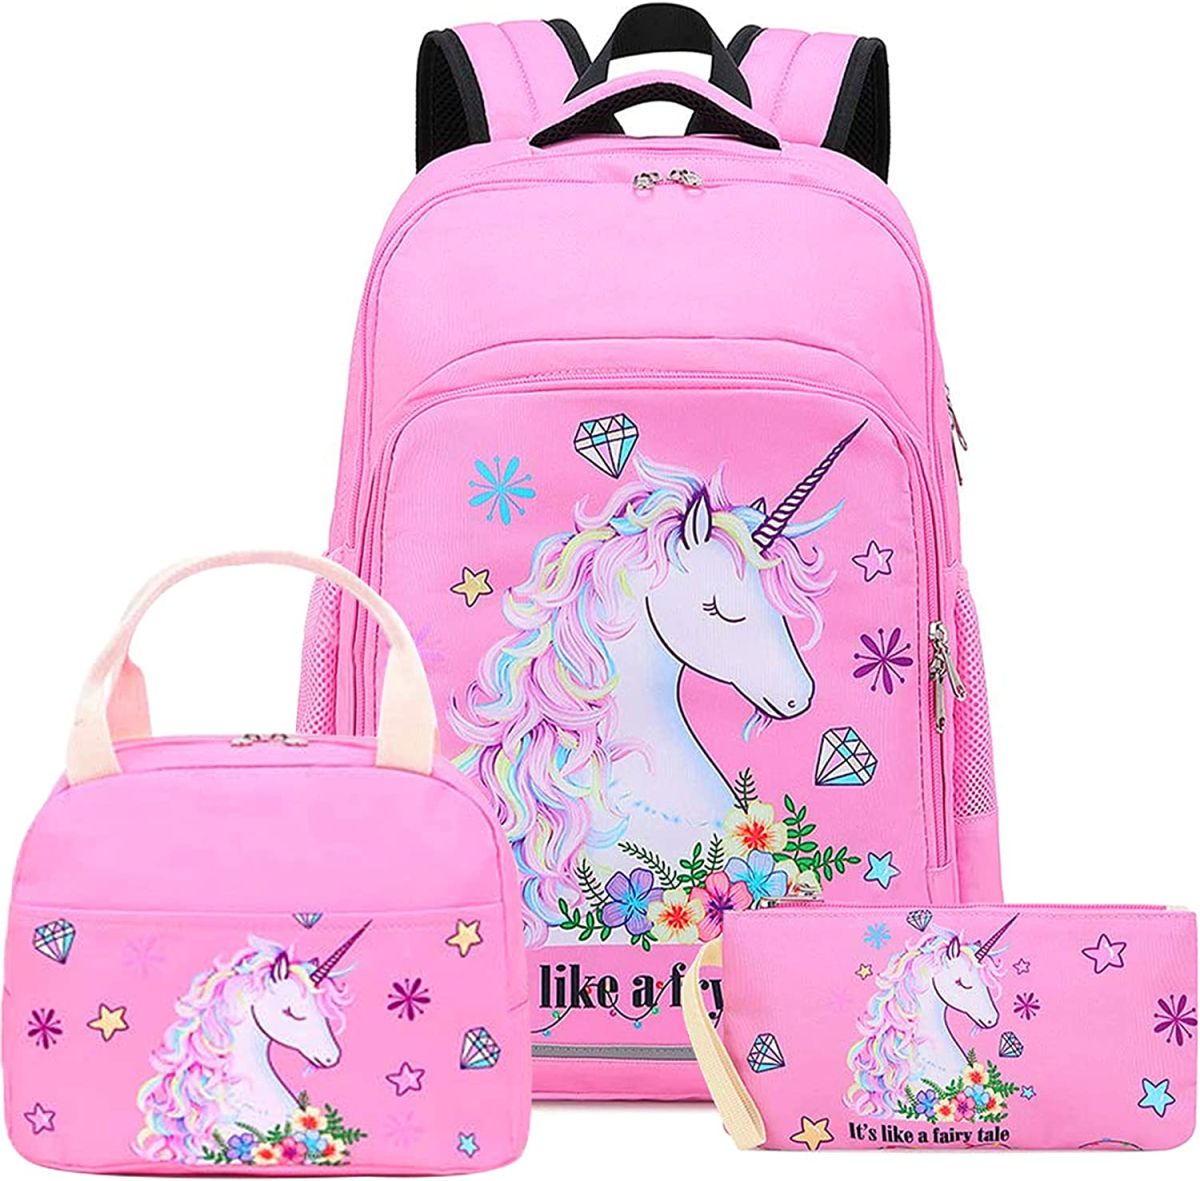 Regreso a clases: 5 mochilas escolares para niñas en oferta en Amazon La Opinión